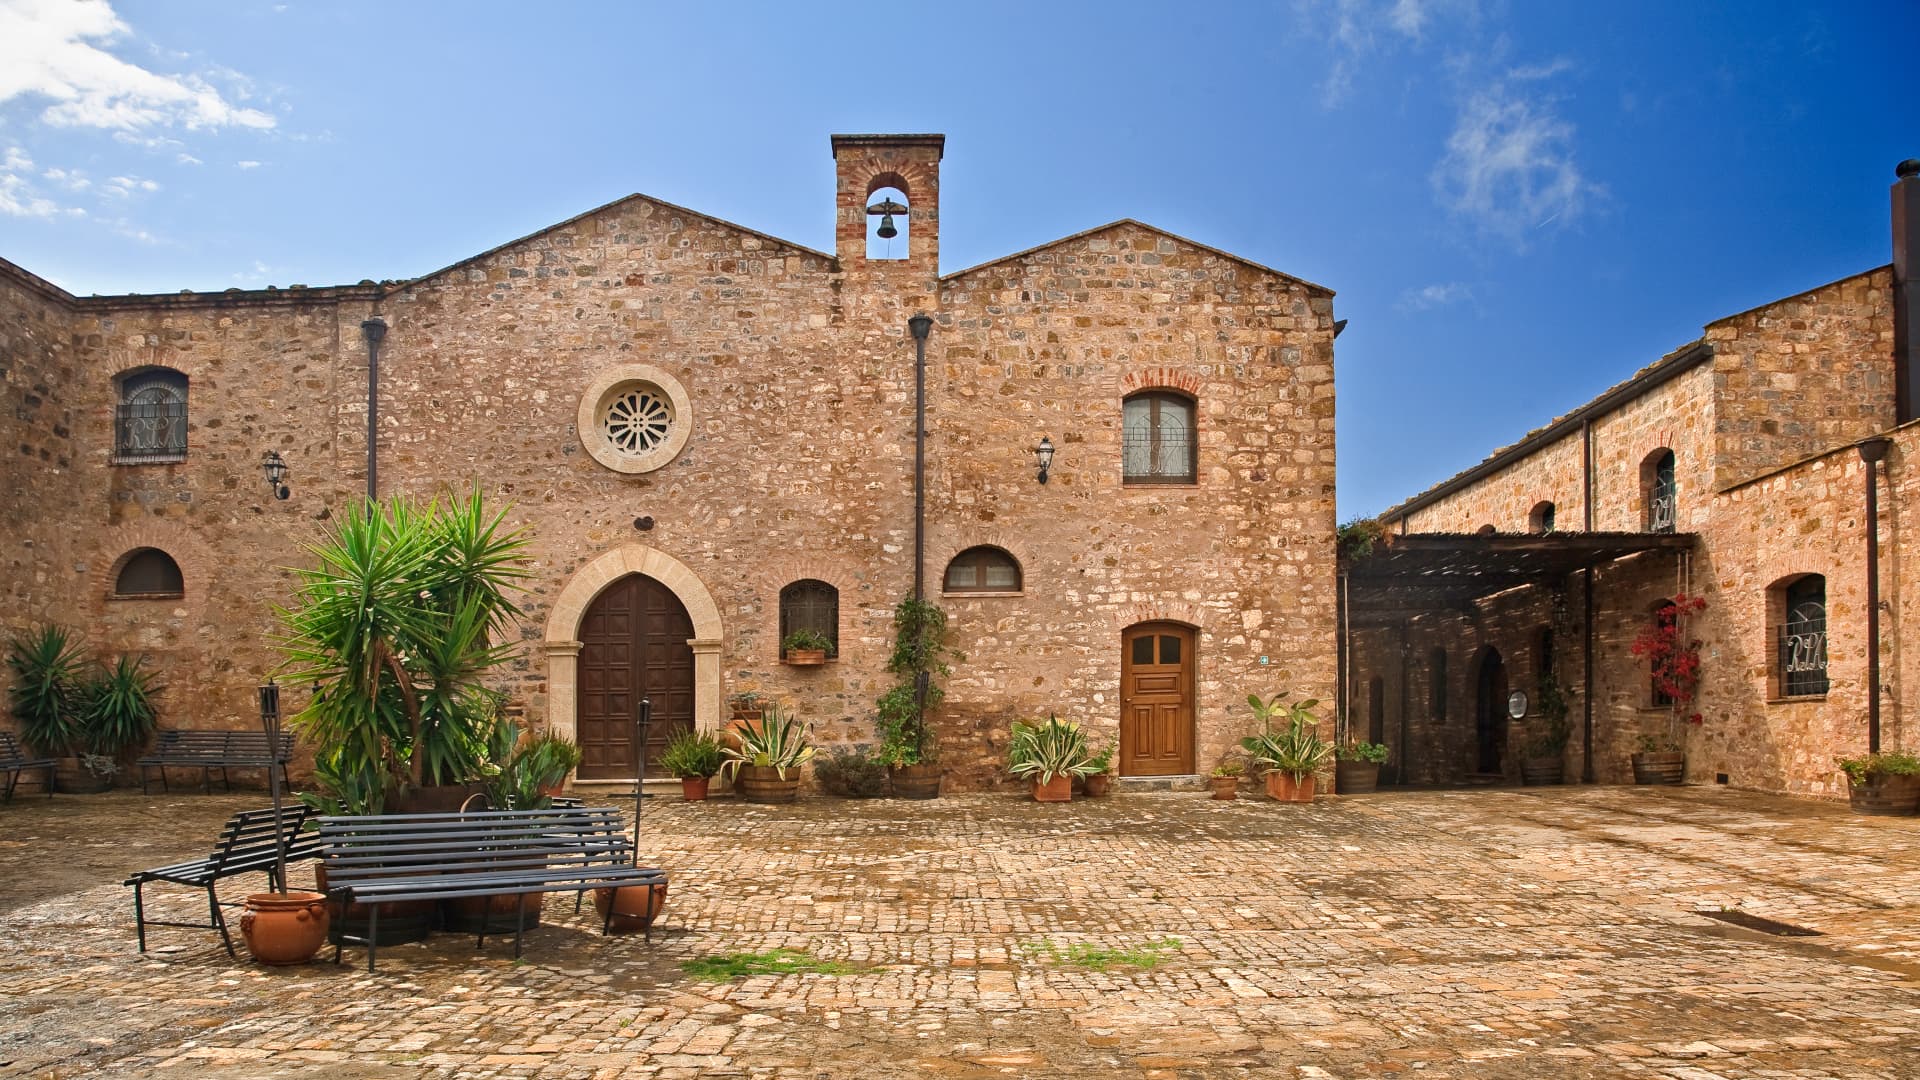  The medieval church, Abbazia Santa Anastasia